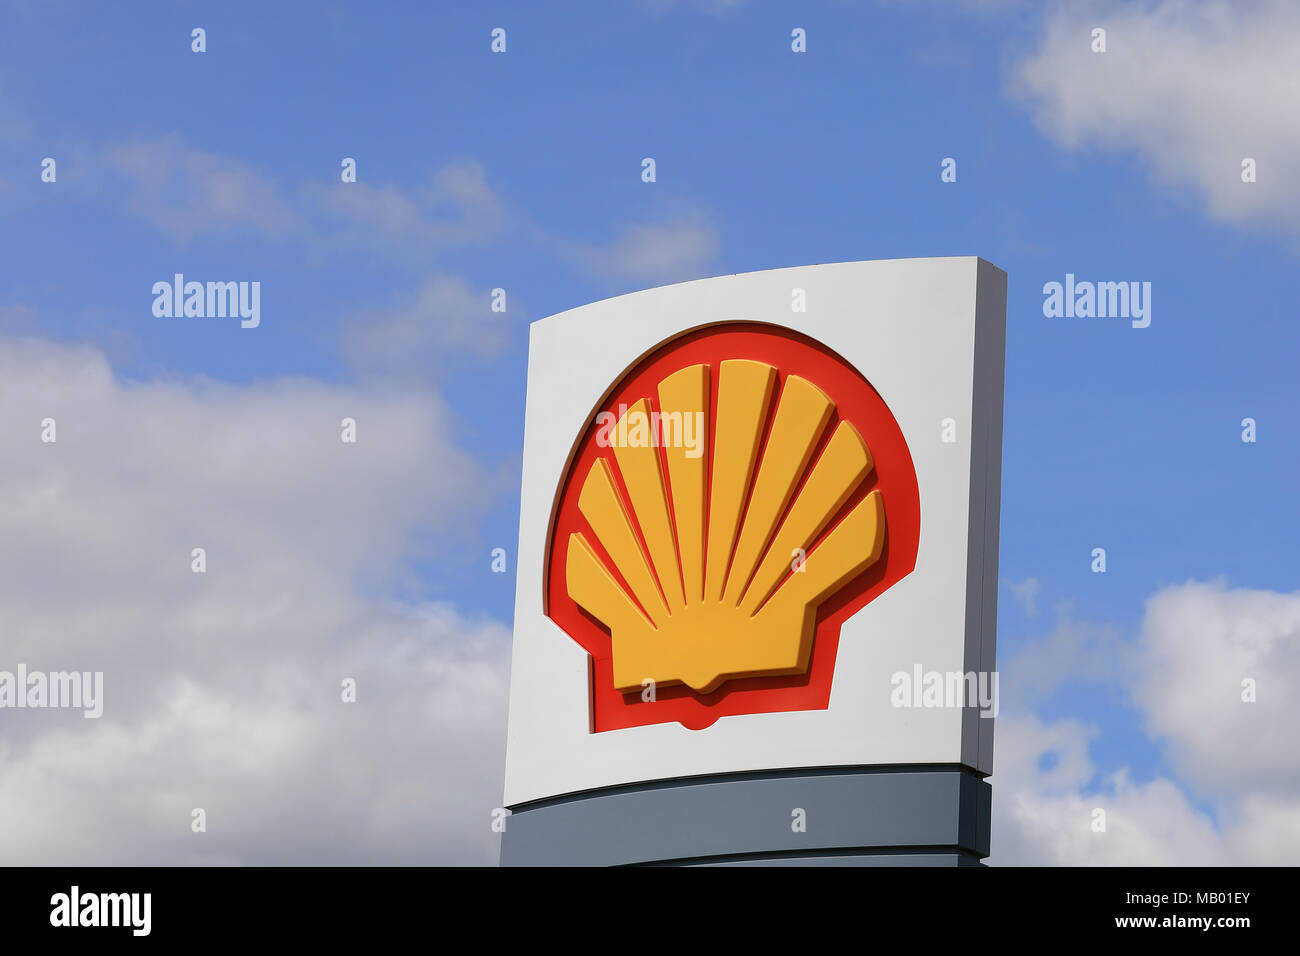 AURA, Finnland - 10. Juni 2017: Die Royal Dutch Shell logo gegen den blauen Himmel und weißen Wolken außerhalb einer Tankstelle im Süden Finnlands. Stockfoto